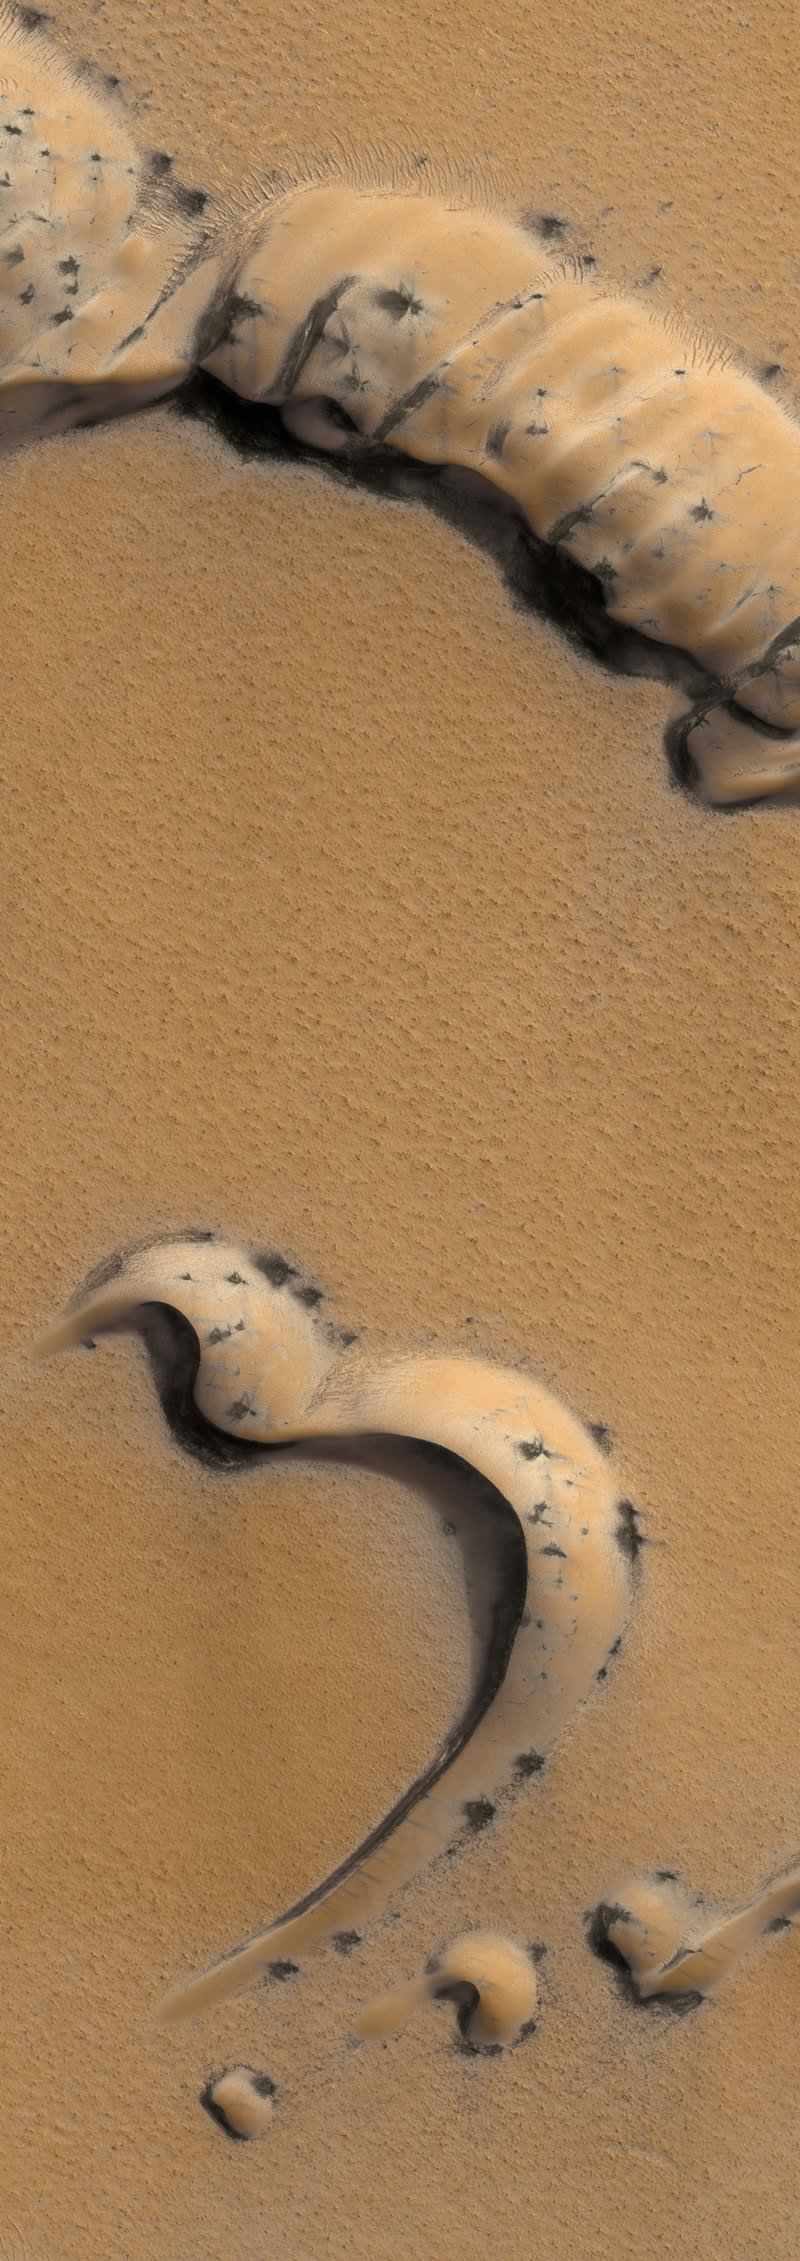 Martian landscape features